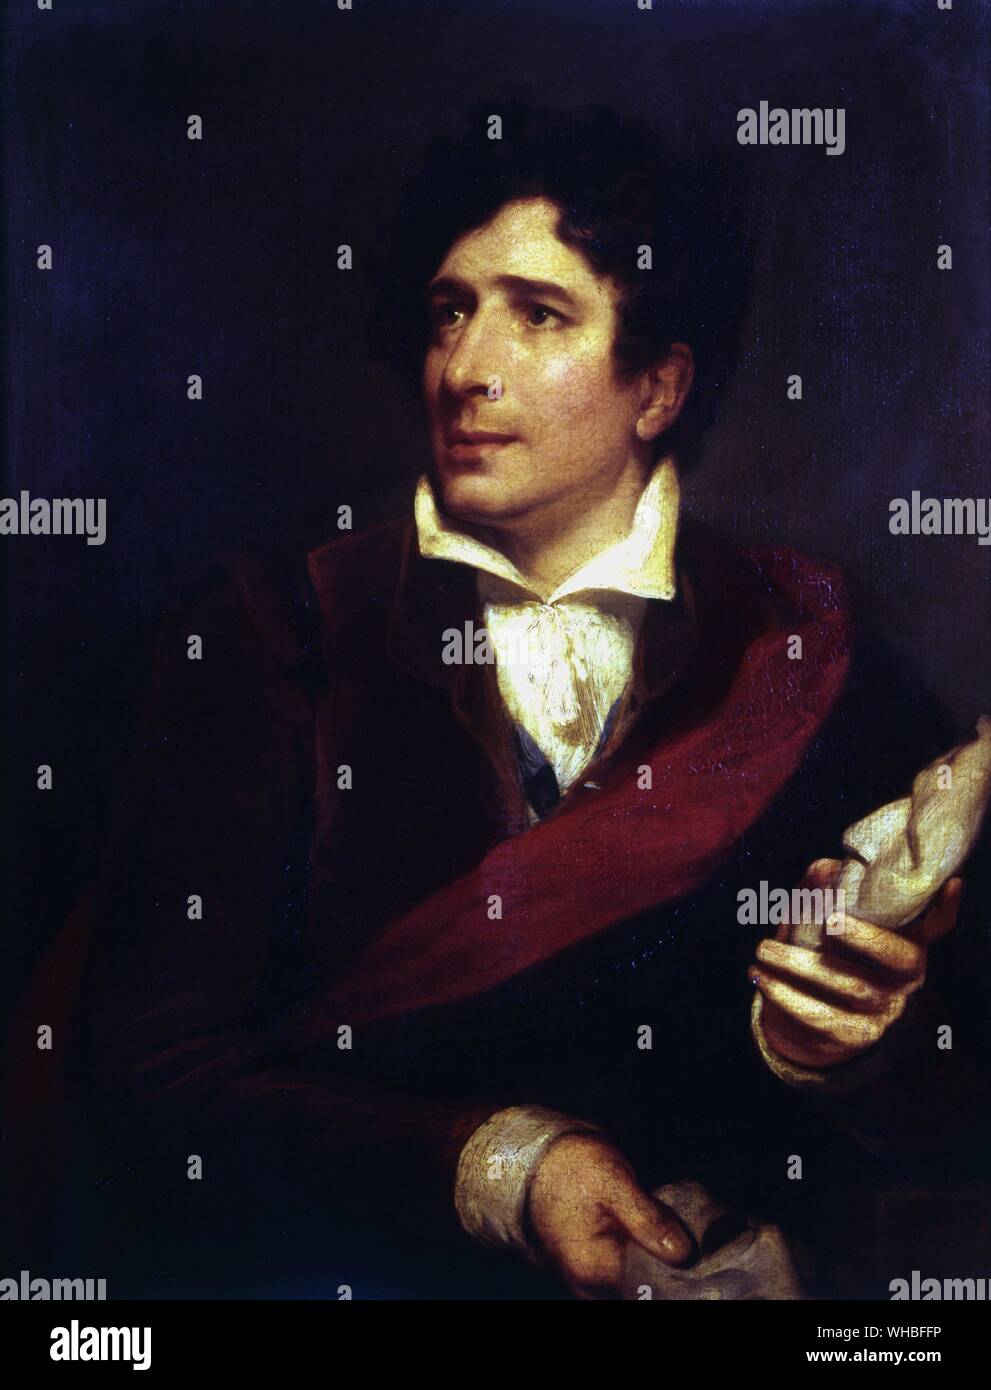 Charles Kemble par H. P. Briggs 1832 - Garrick Club, Londres.. Charles Kemble (Novembre 25, 1775 - Novembre 12, 1854) était un acteur britannique, le plus jeune fils de Roger Kemble.. Banque D'Images